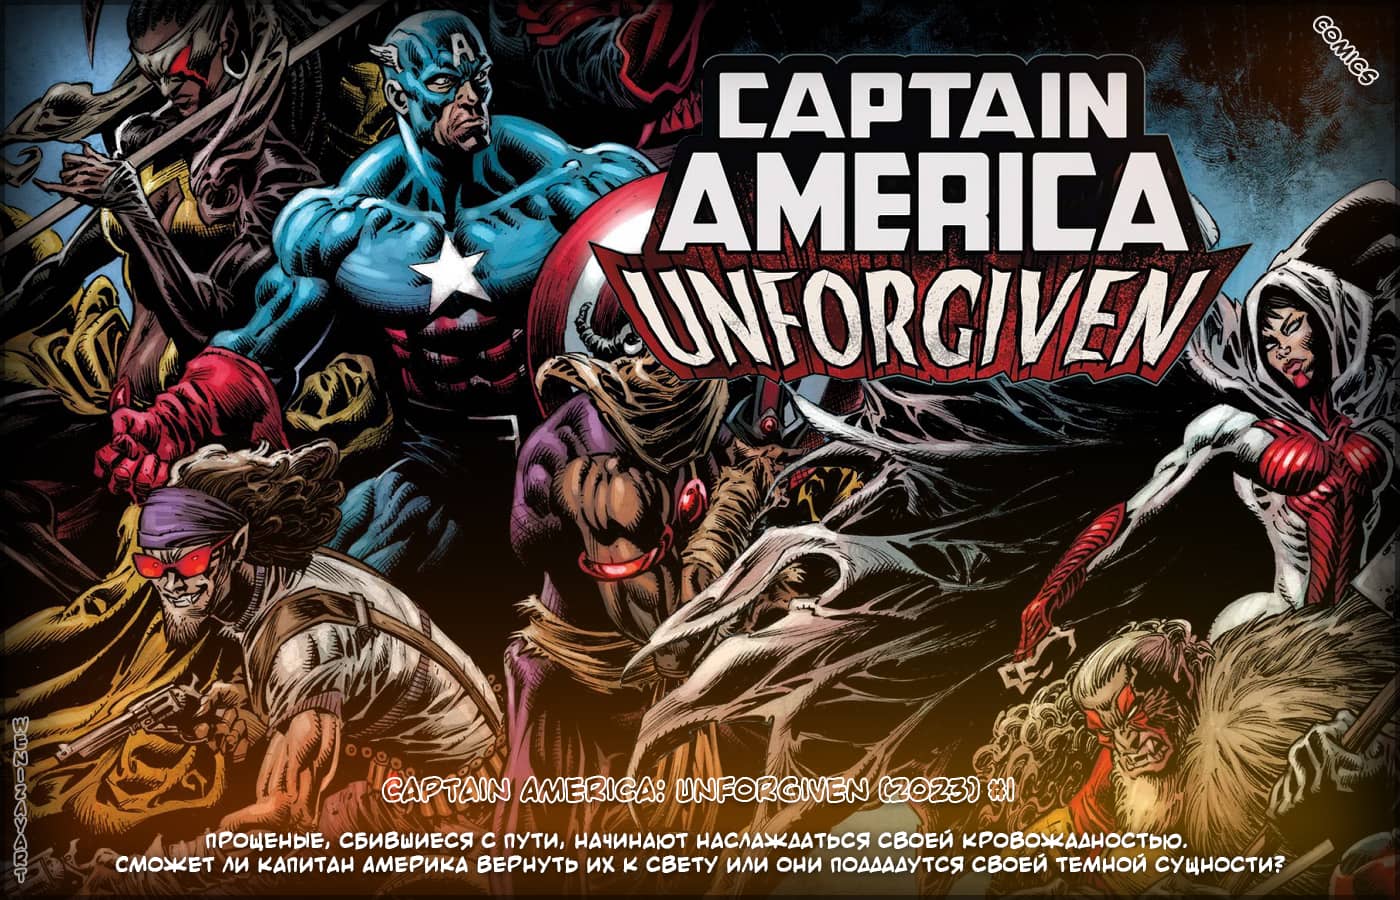 Капитан Америка: Непрощенный, Captain America: Unforgiven, комикс